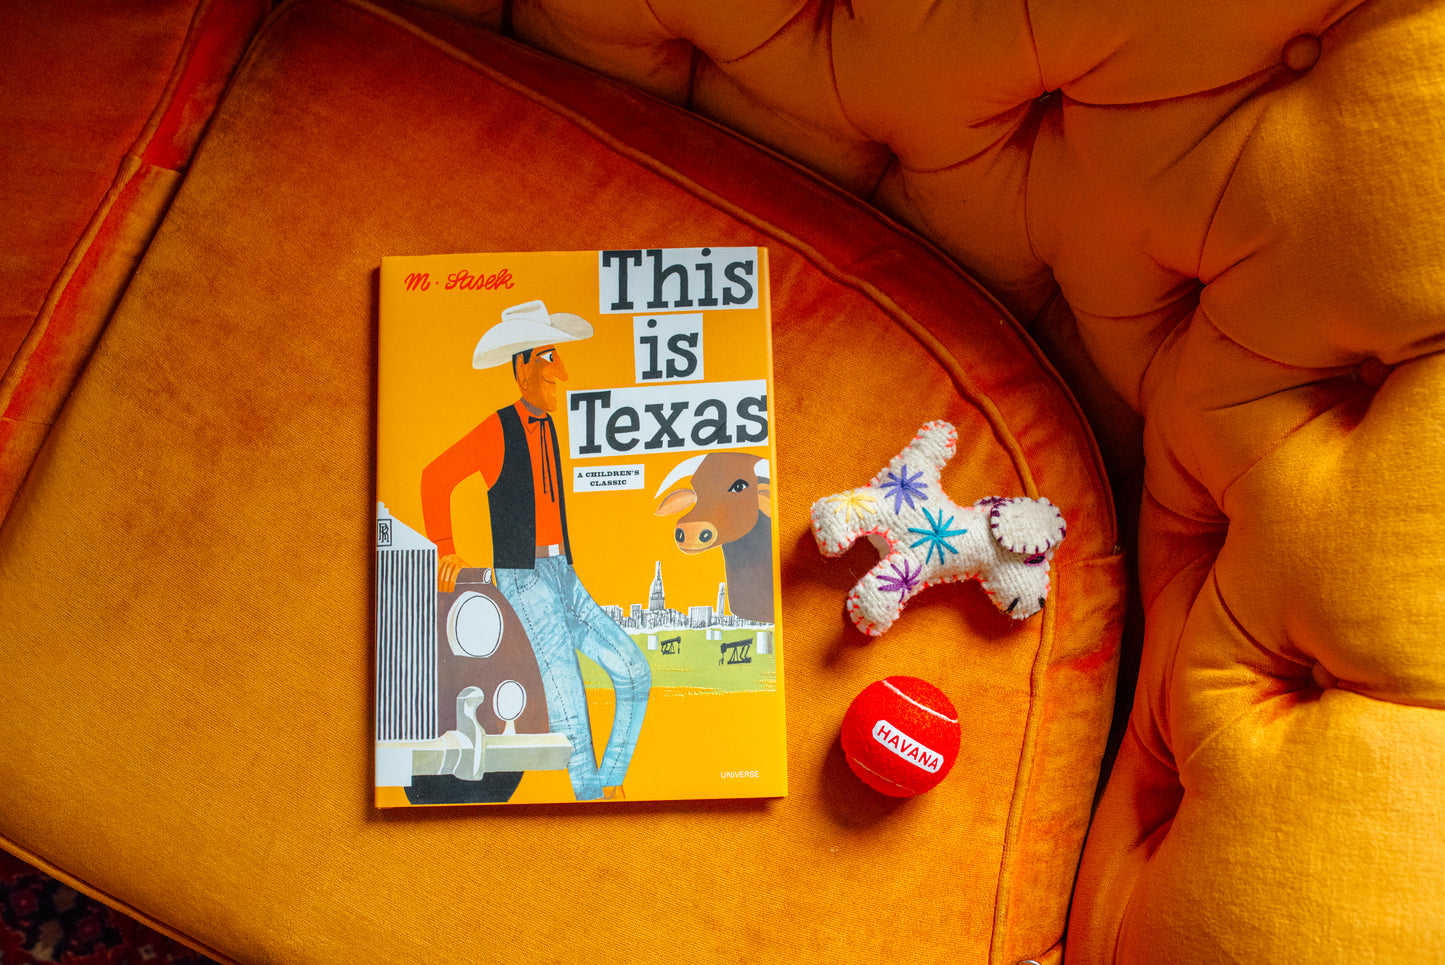 "This Is Texas" by Miroslav Sasek